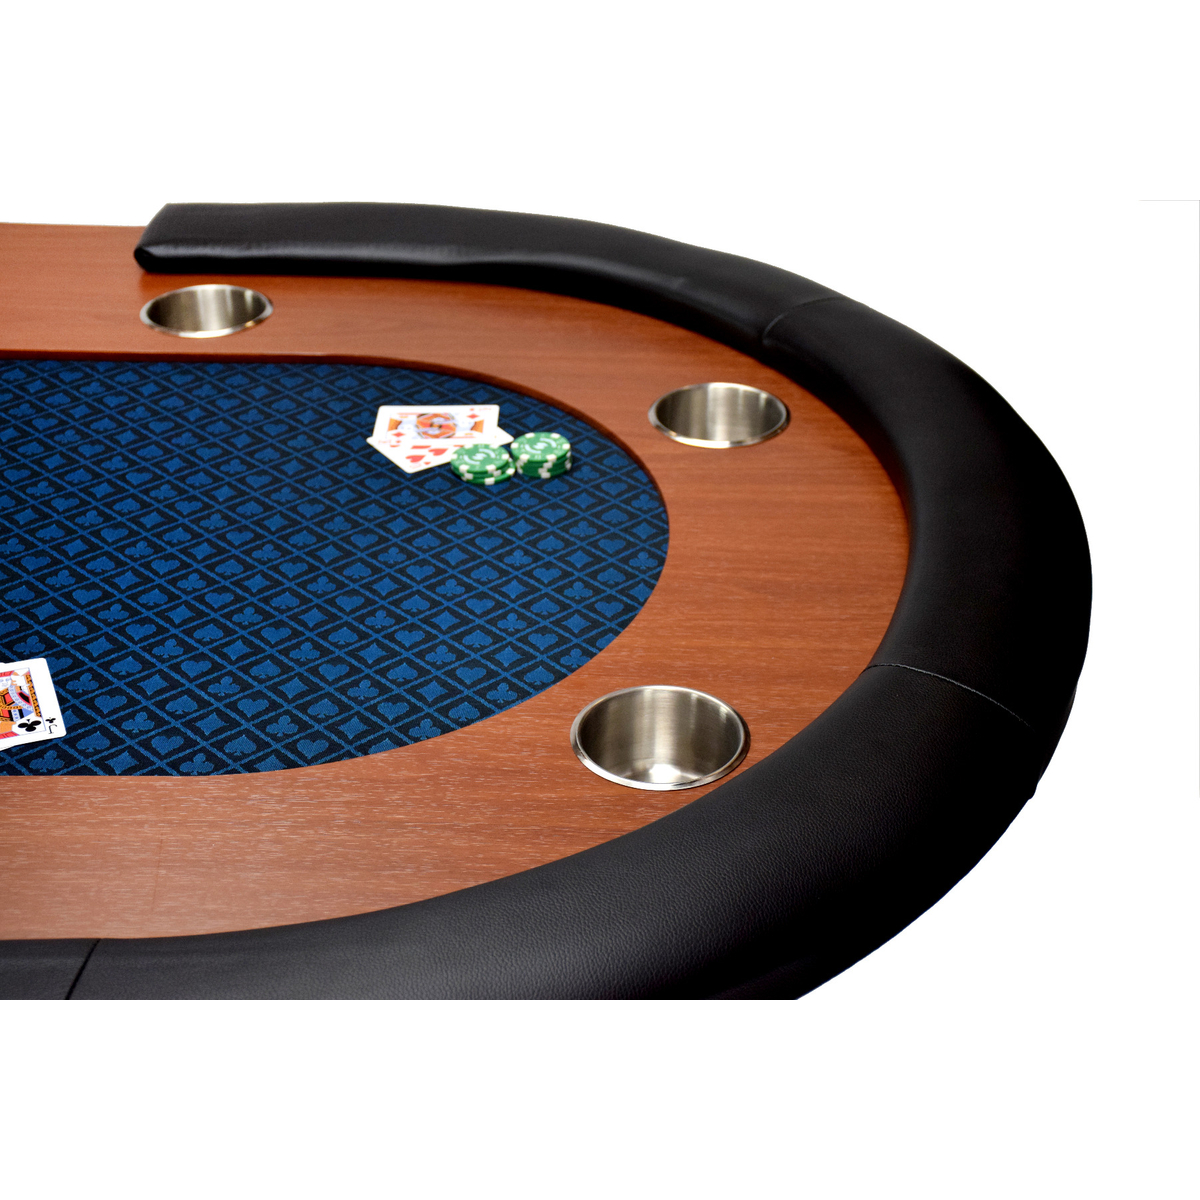 North Pokertafel Nevada 10 Personen Blauw